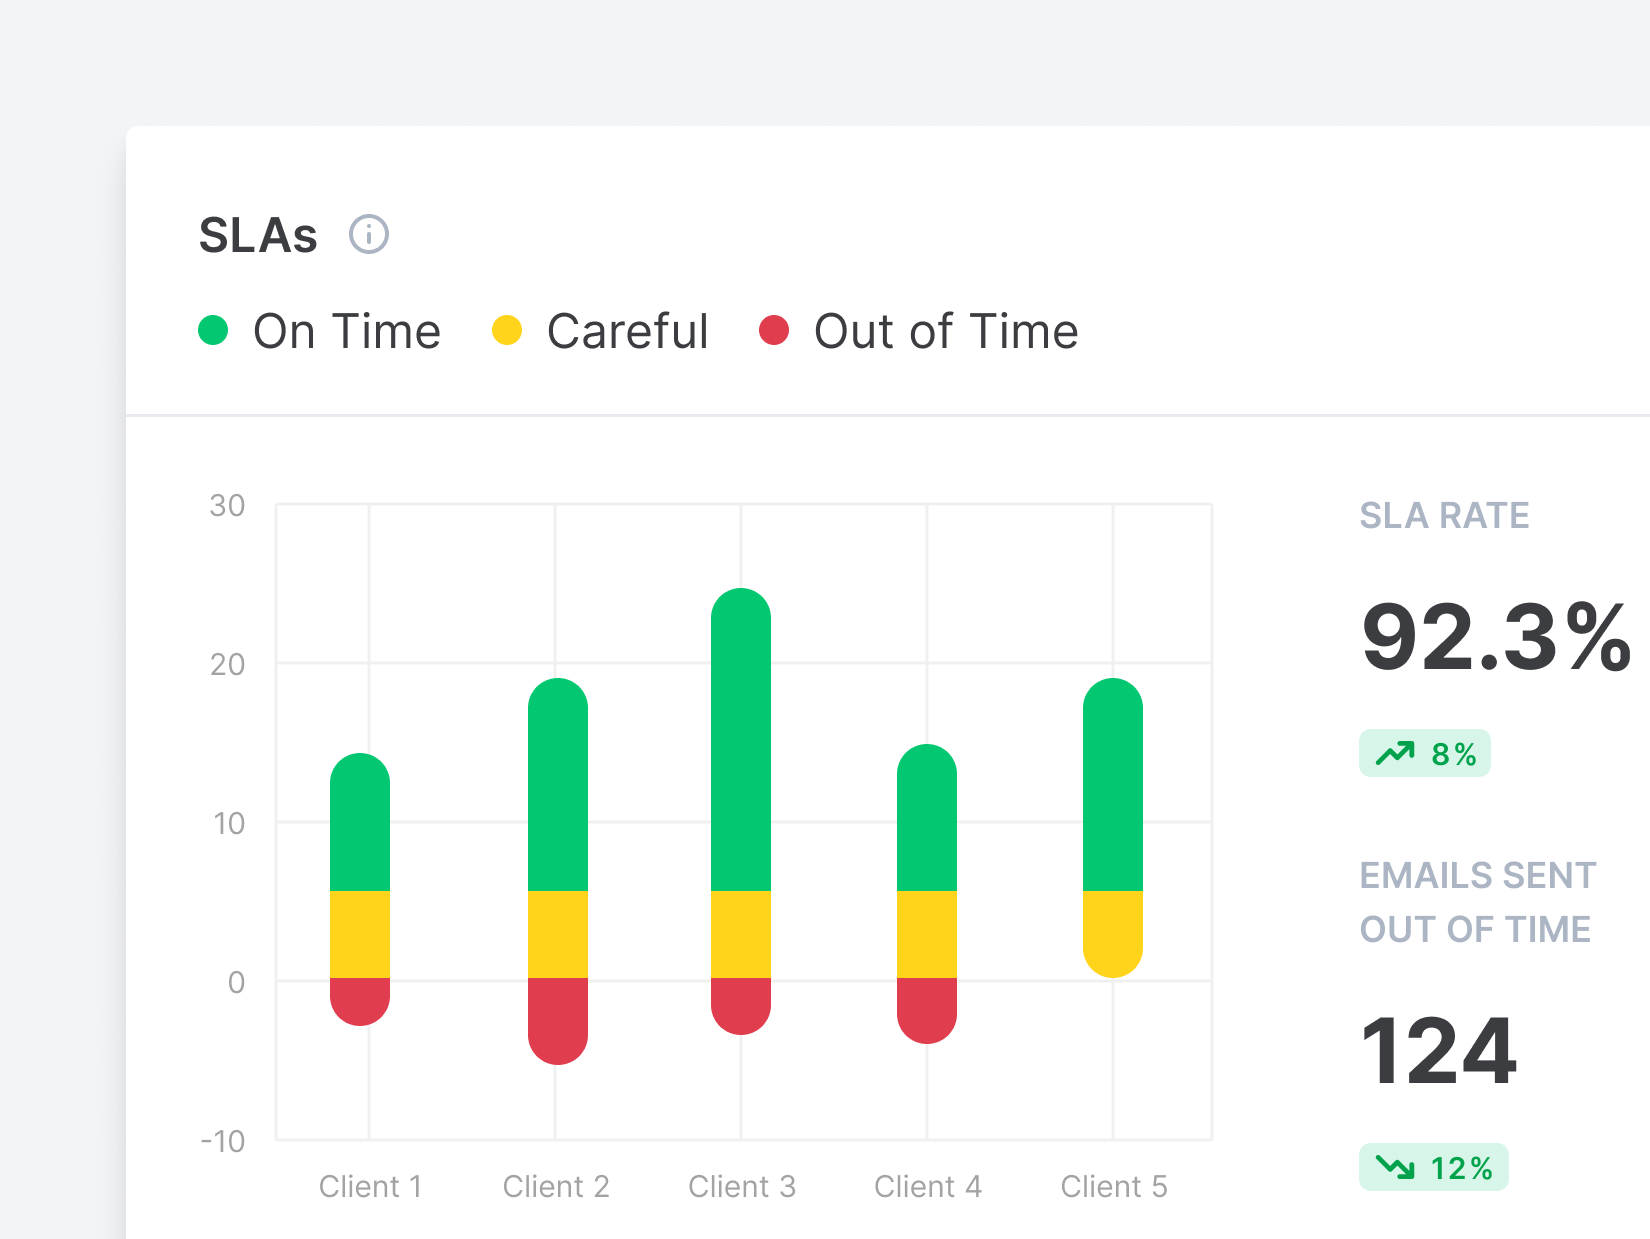 Email Meter Enterprise Software - Keep track of SLAs